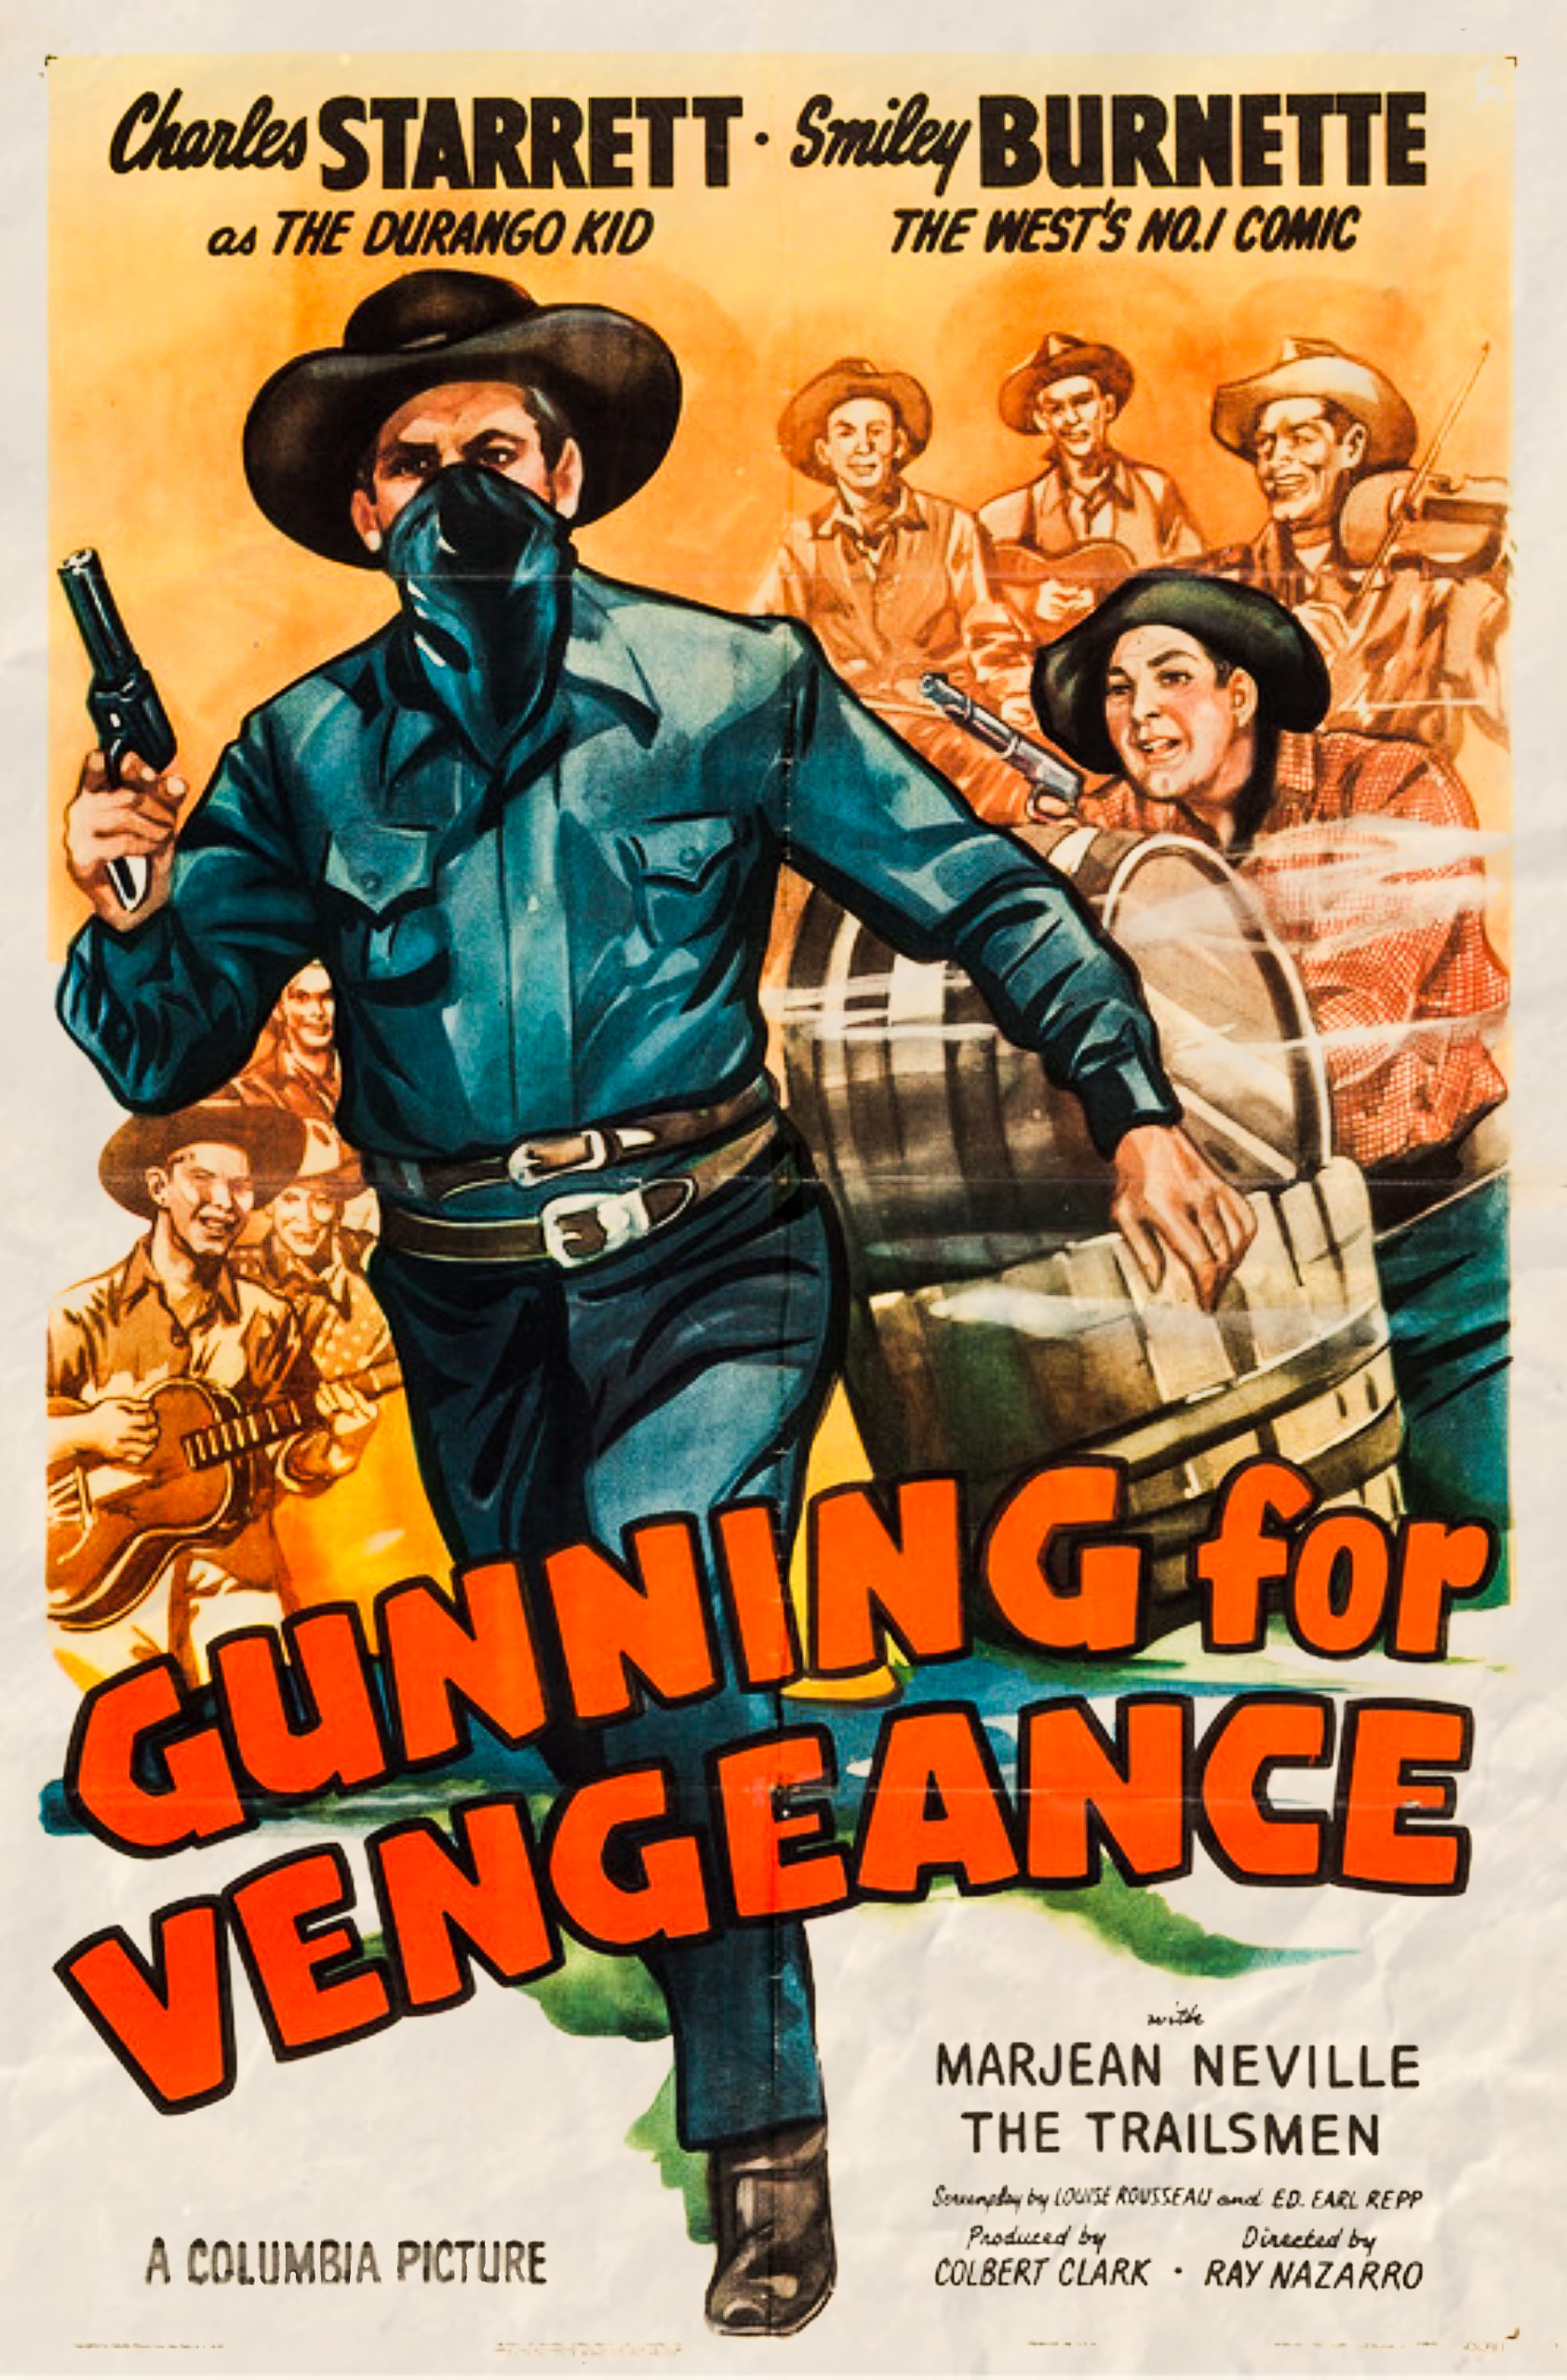 Gunning for Vengeance